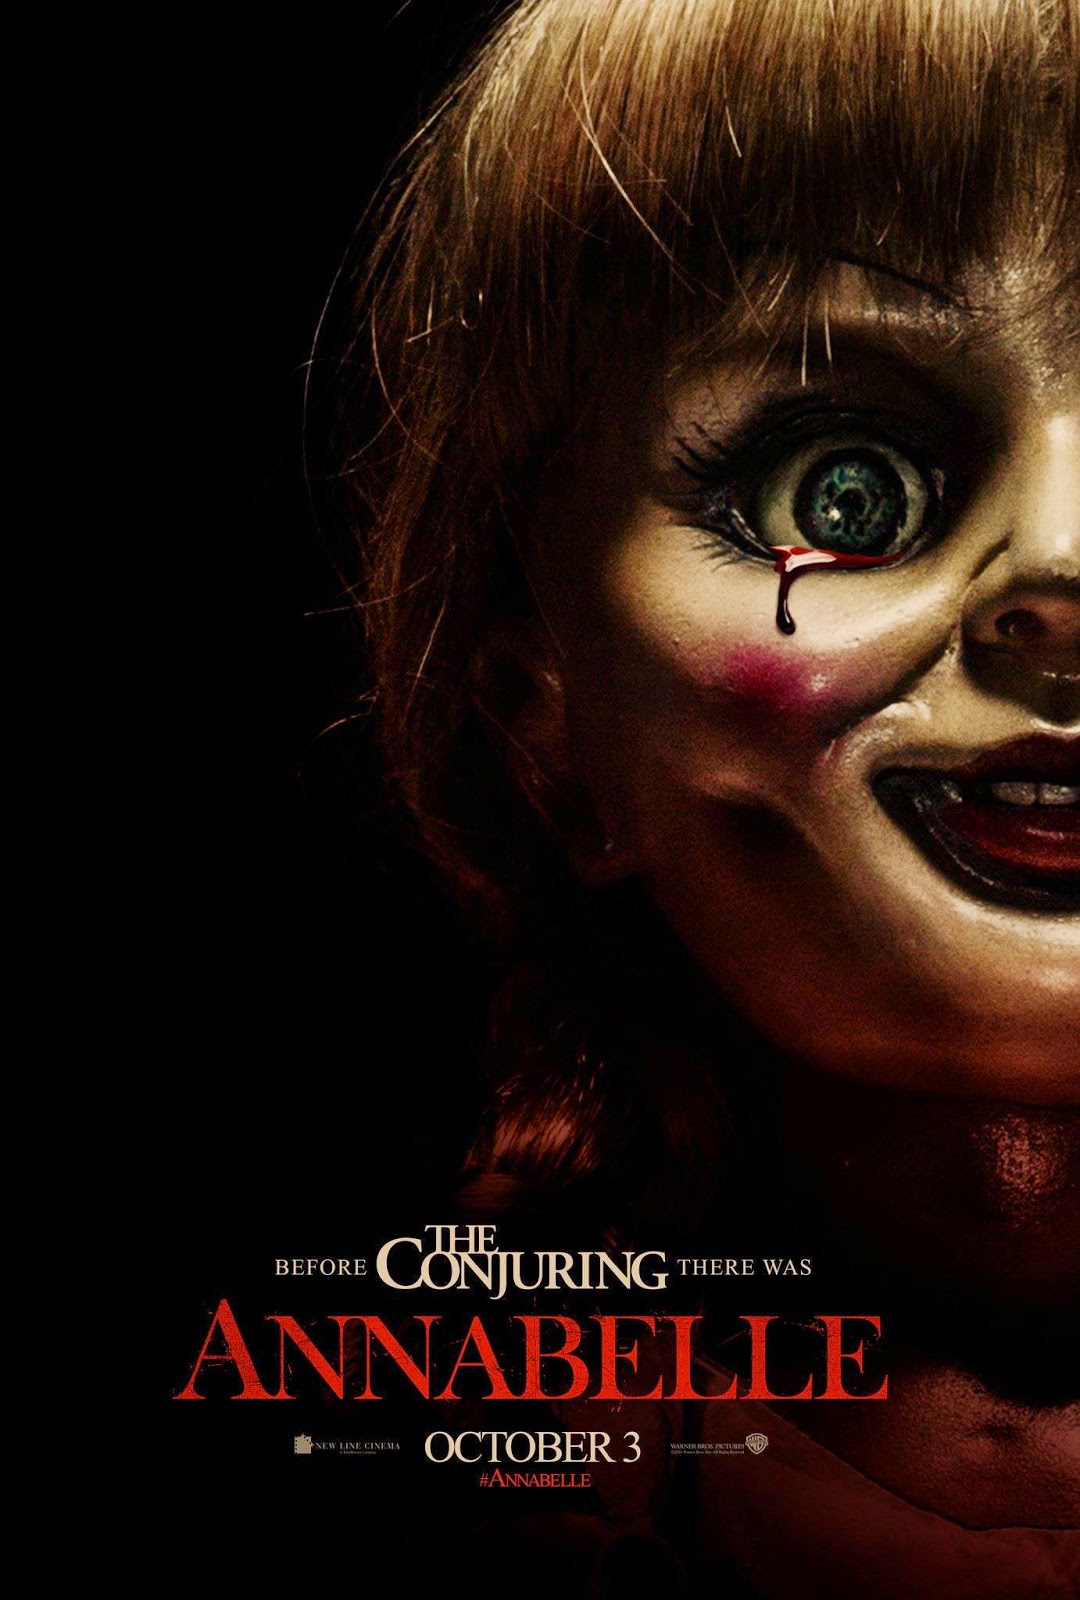 Annabelle Full Movie 2014